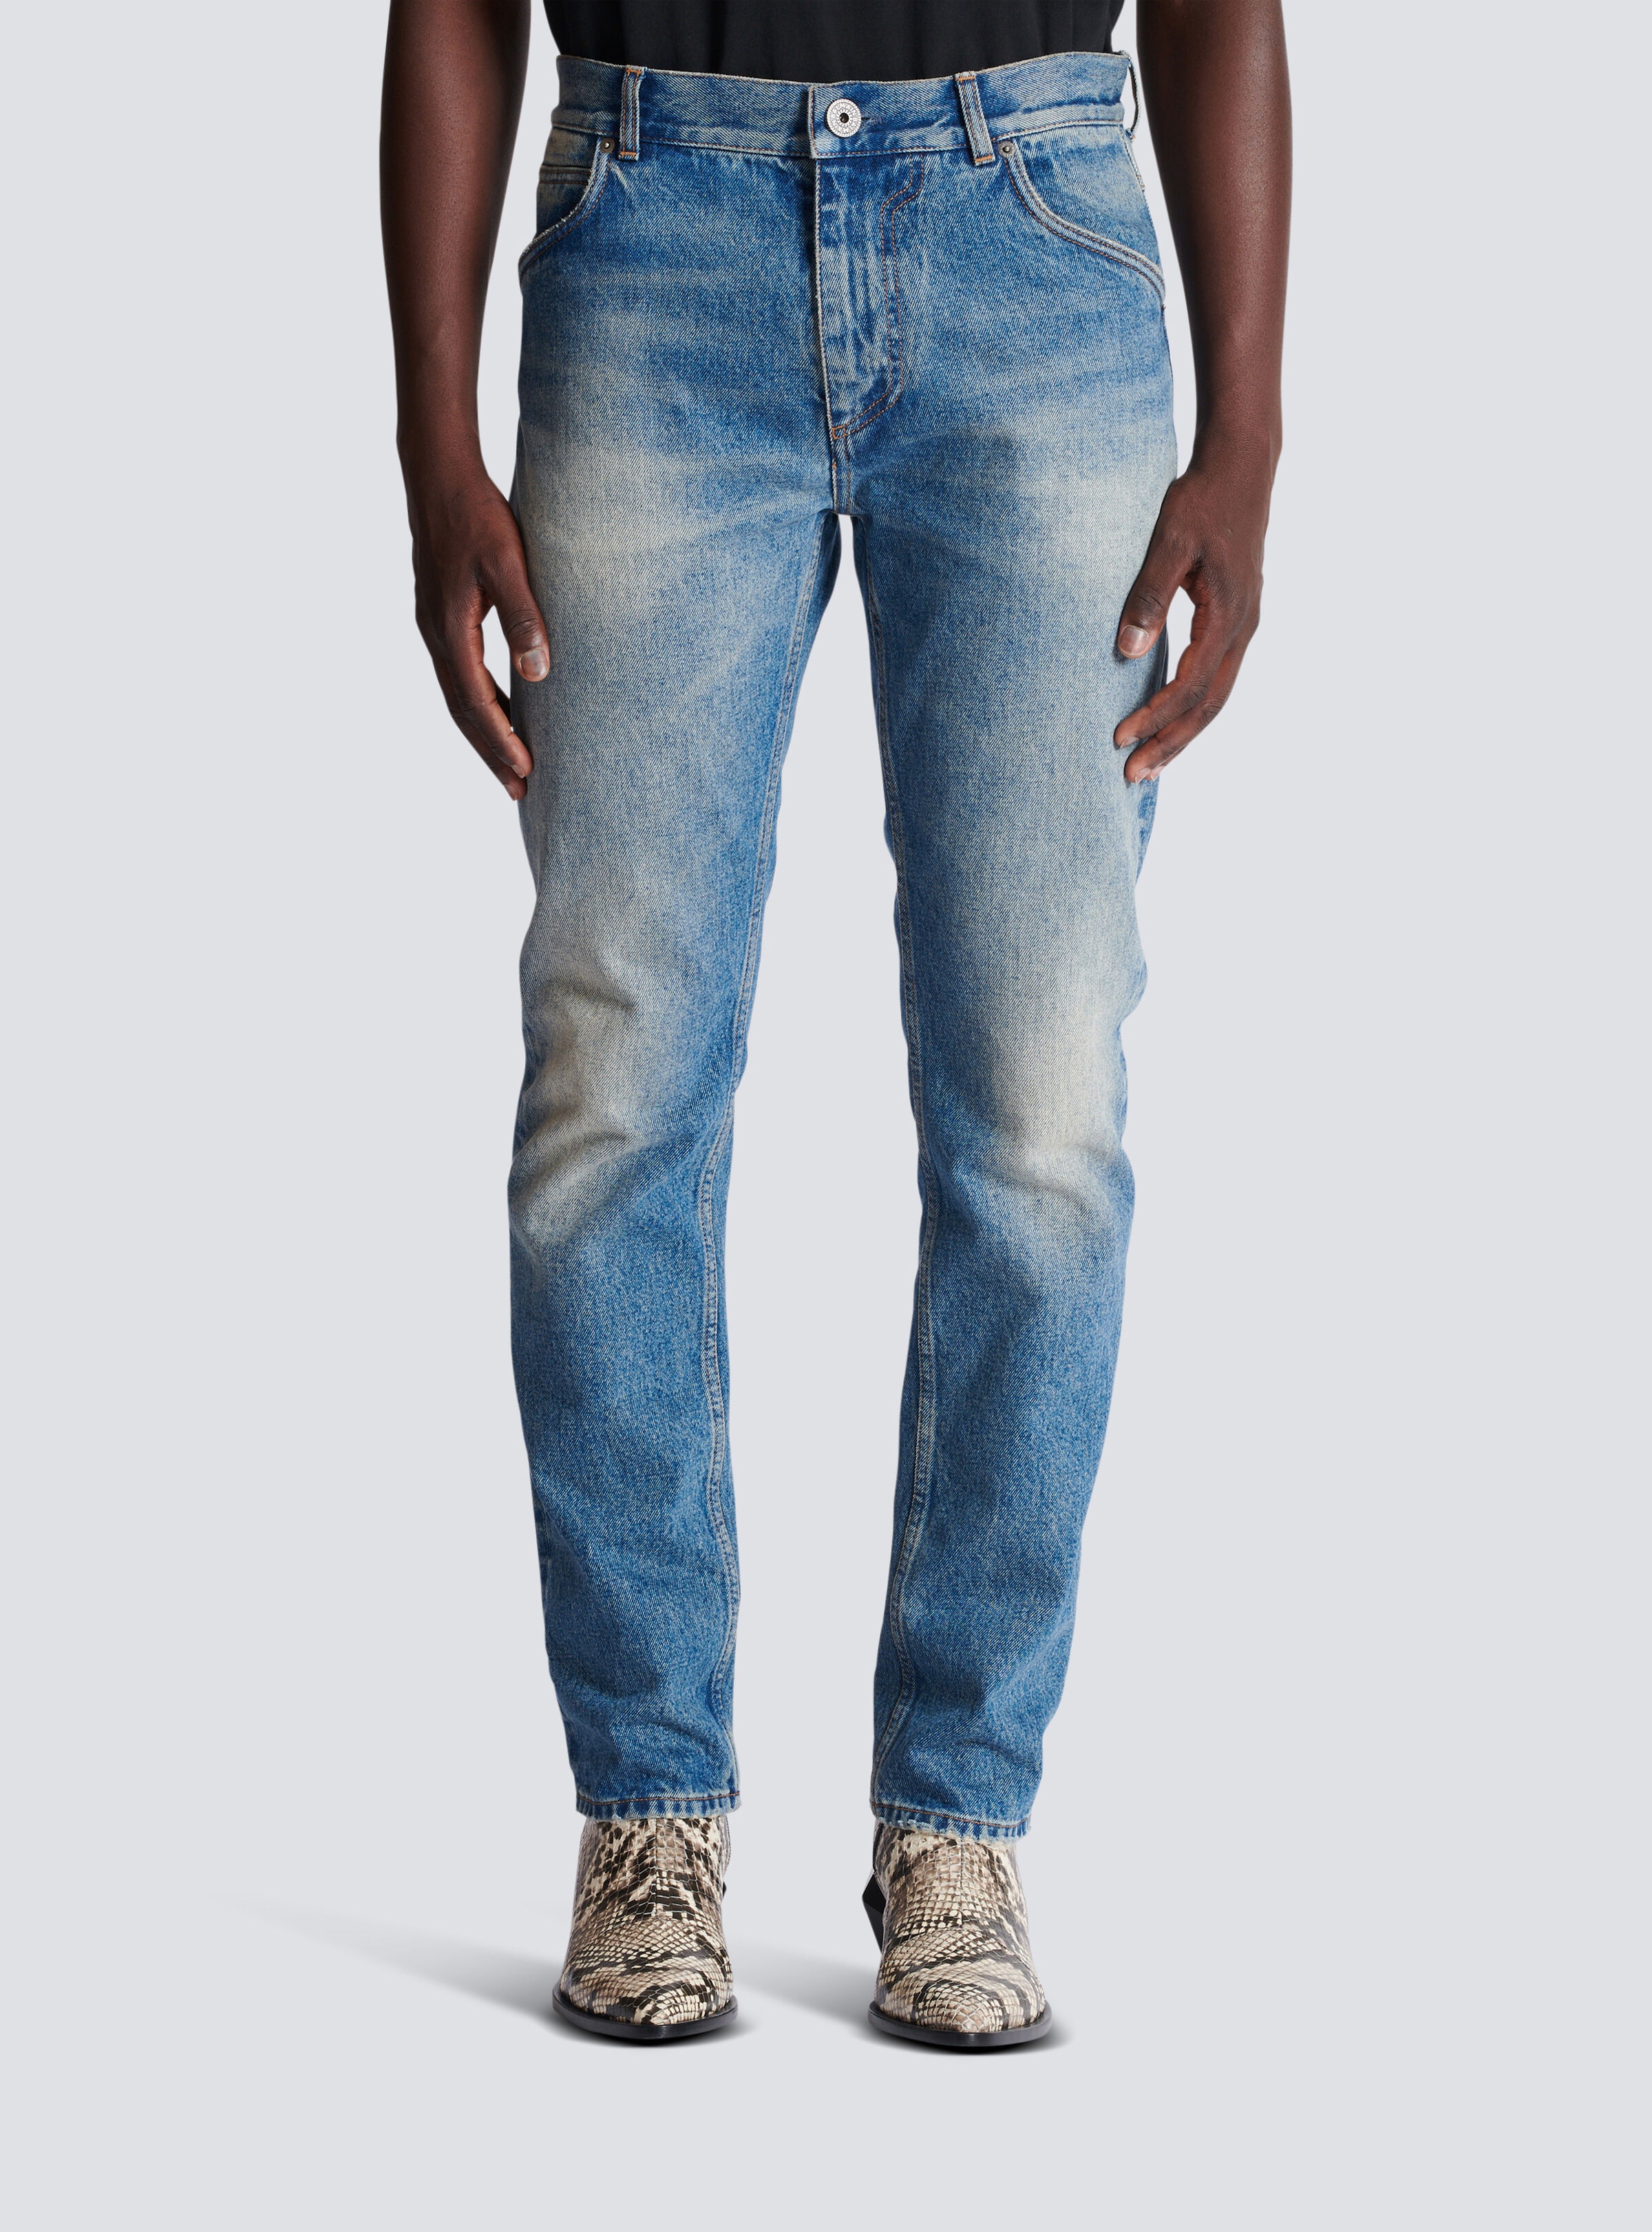 Blue Wash vintage denim jeans - 5